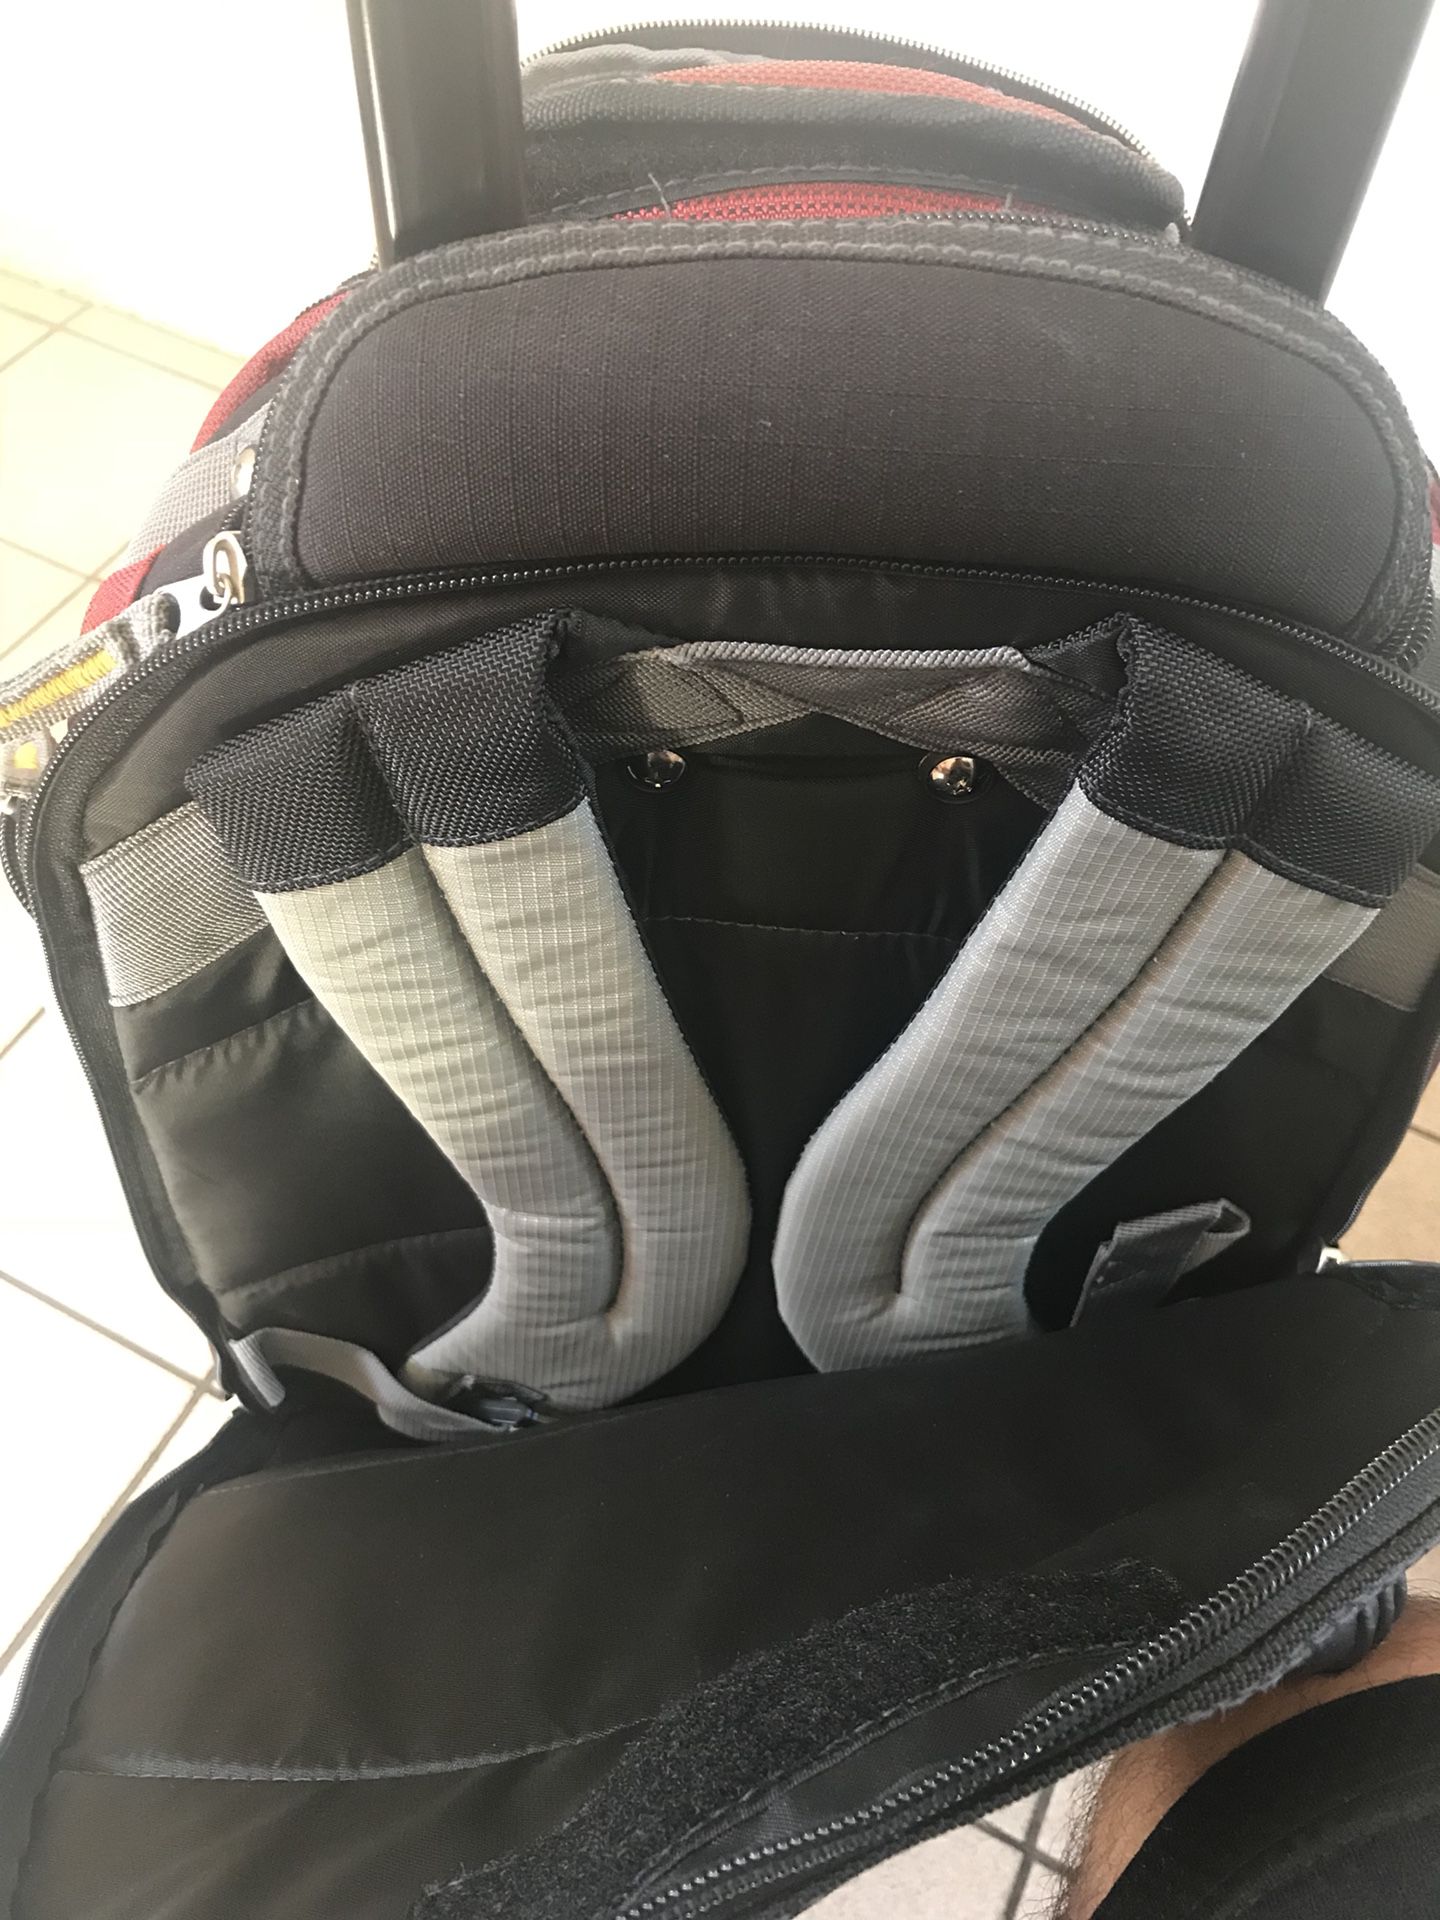 Multi Sac Backpack Purse for Sale in Murrieta, CA - OfferUp